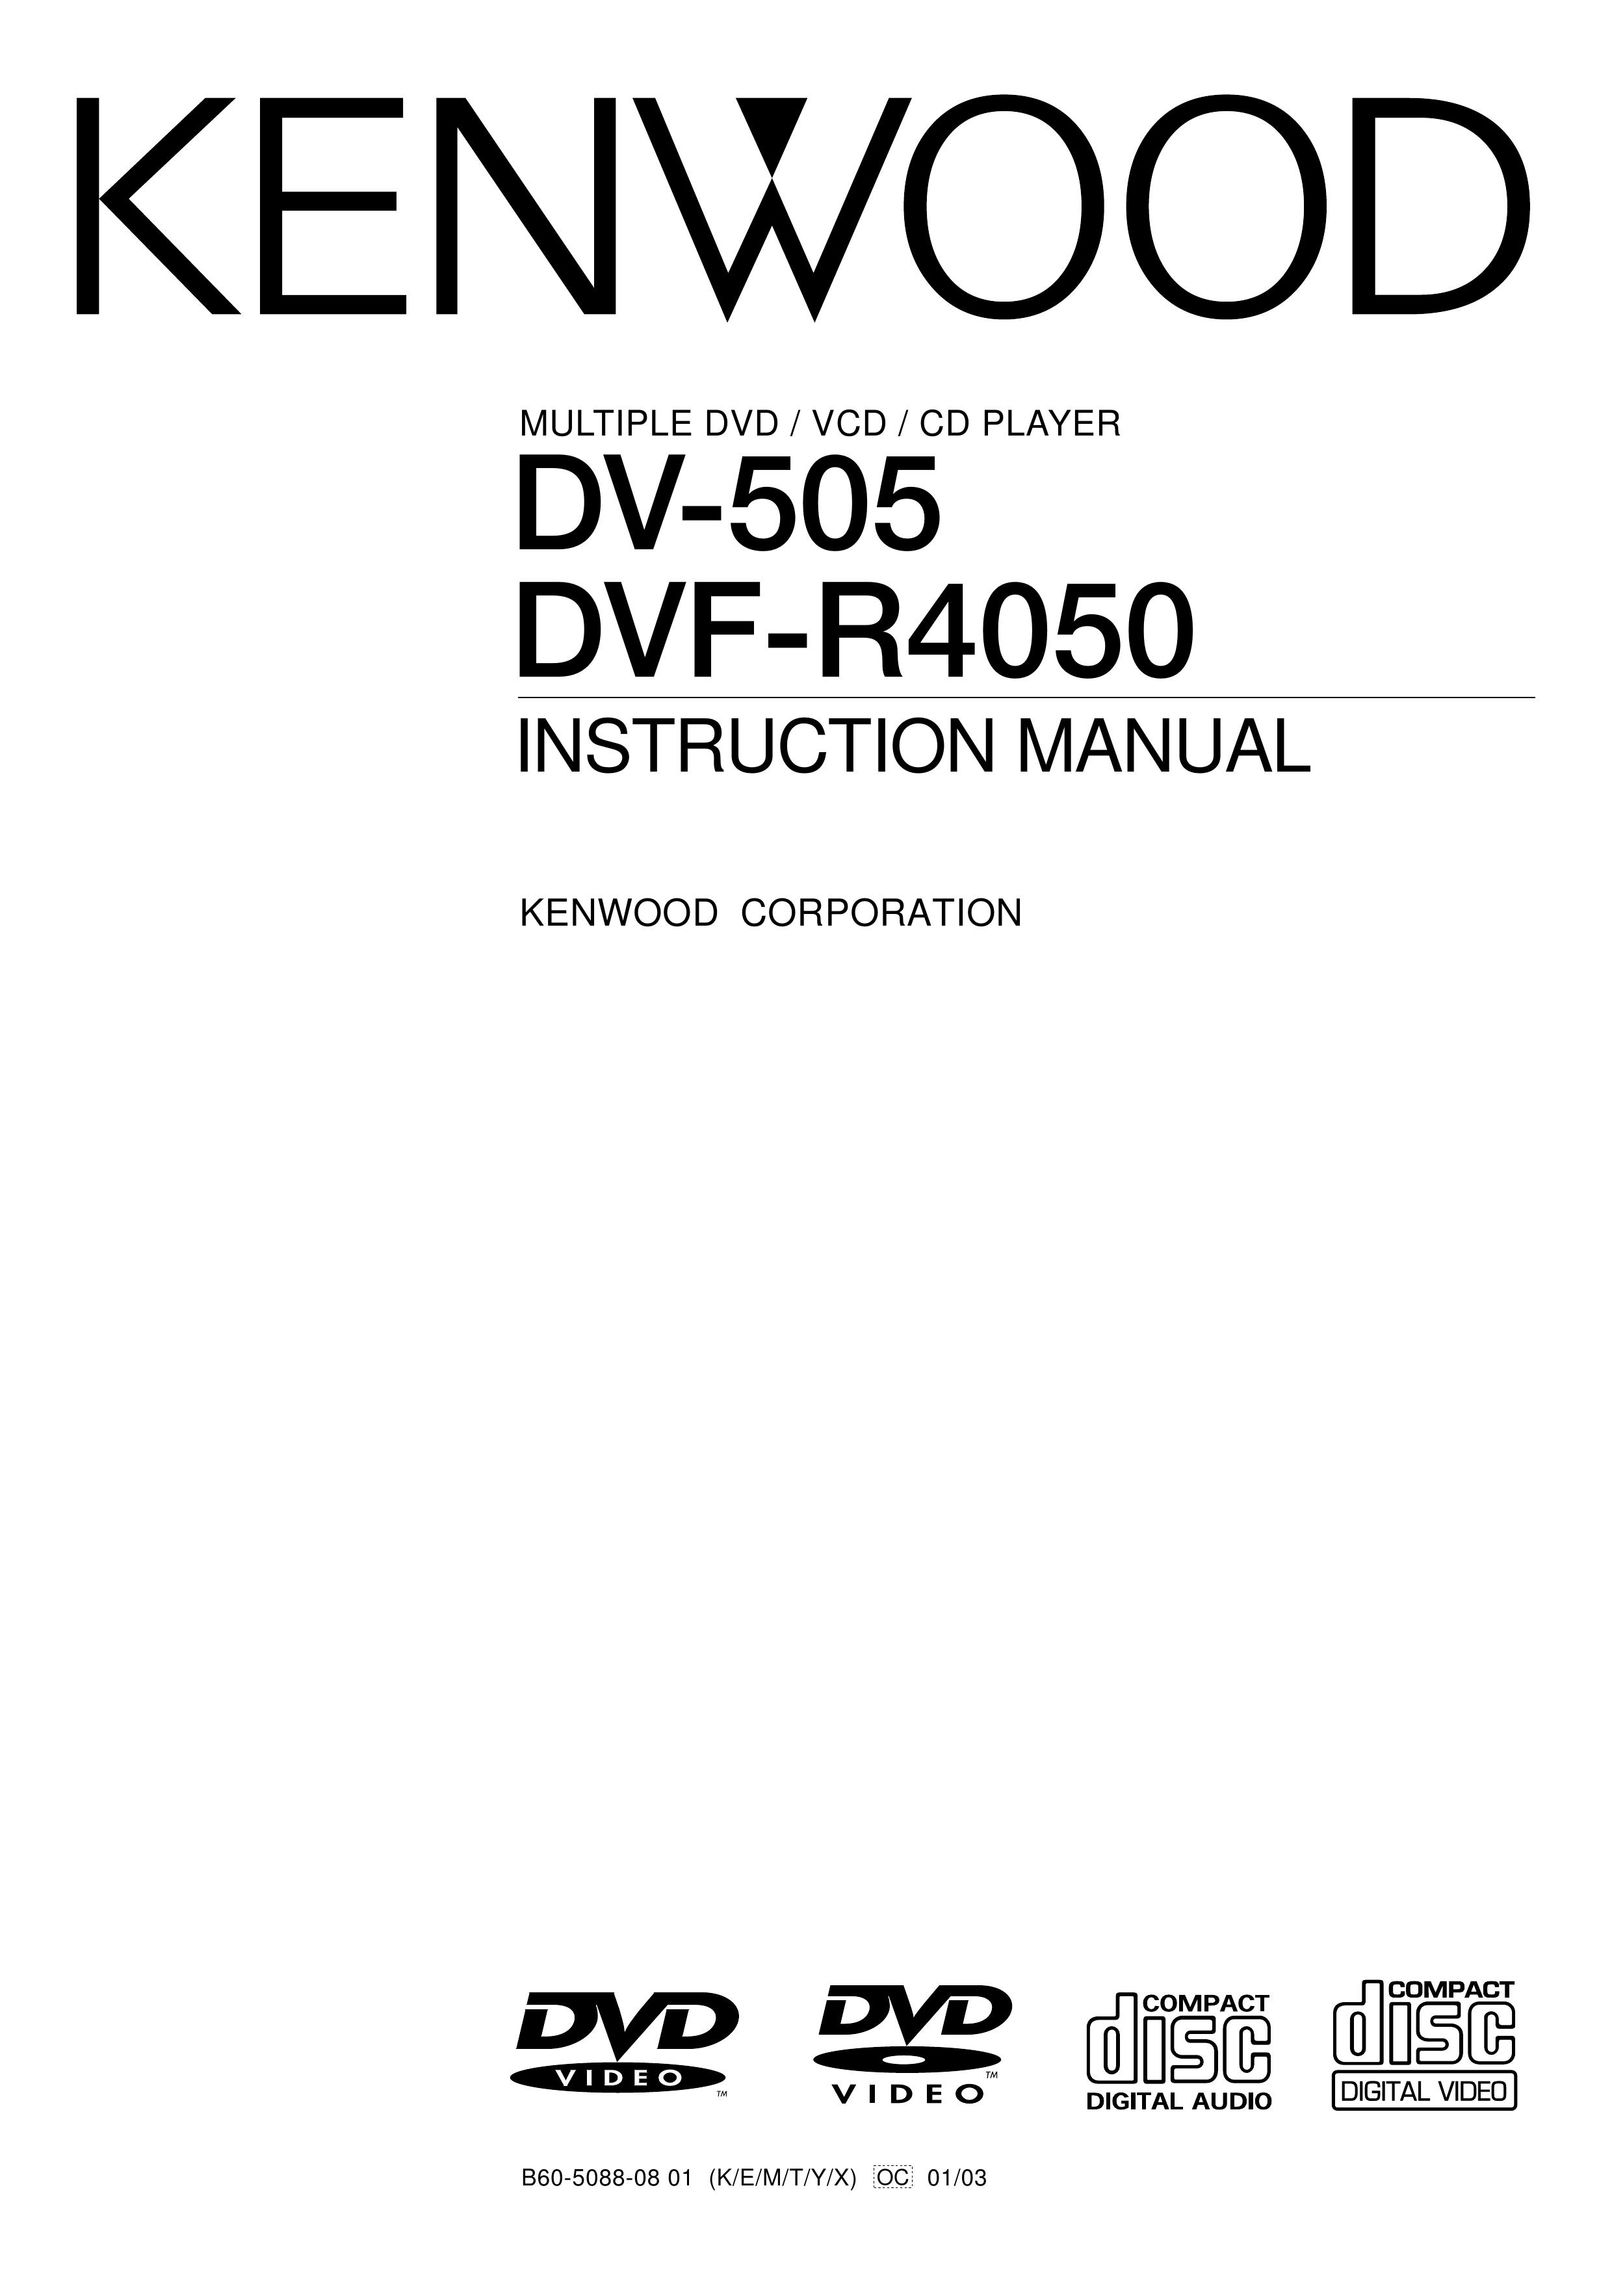 Kenwood DV-505 DVD Player User Manual